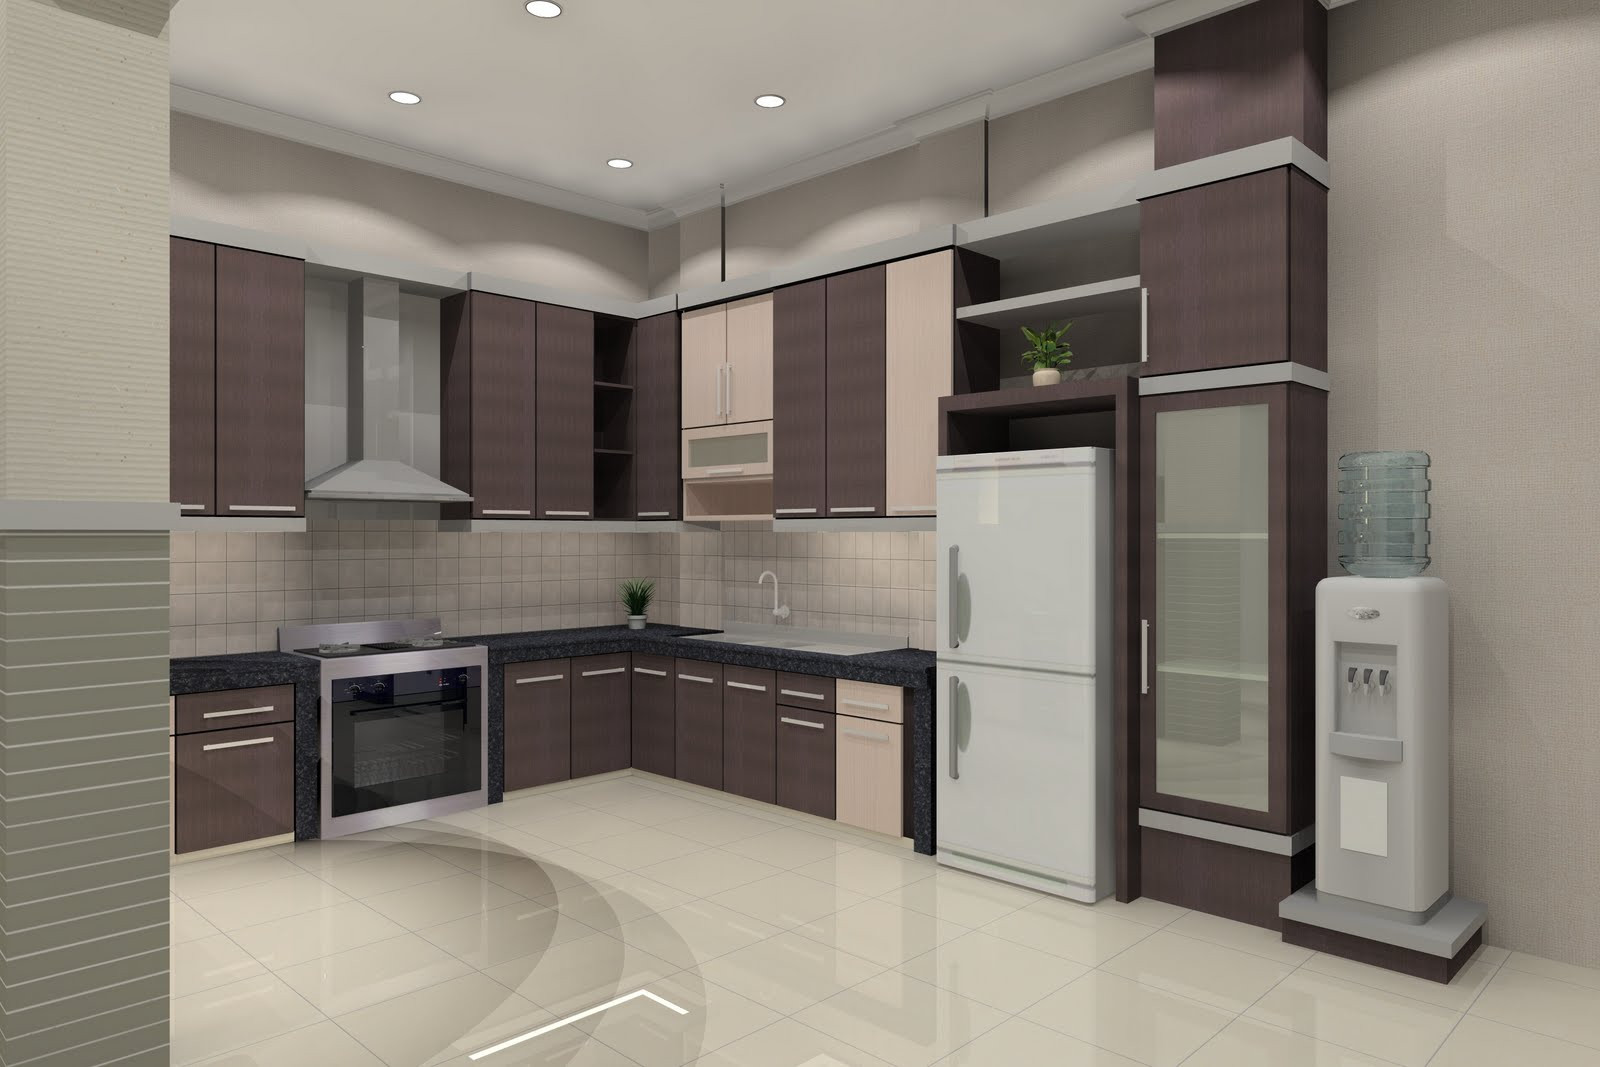 32 kumpulan gambar dapur rumah minimalis terbaru 2015